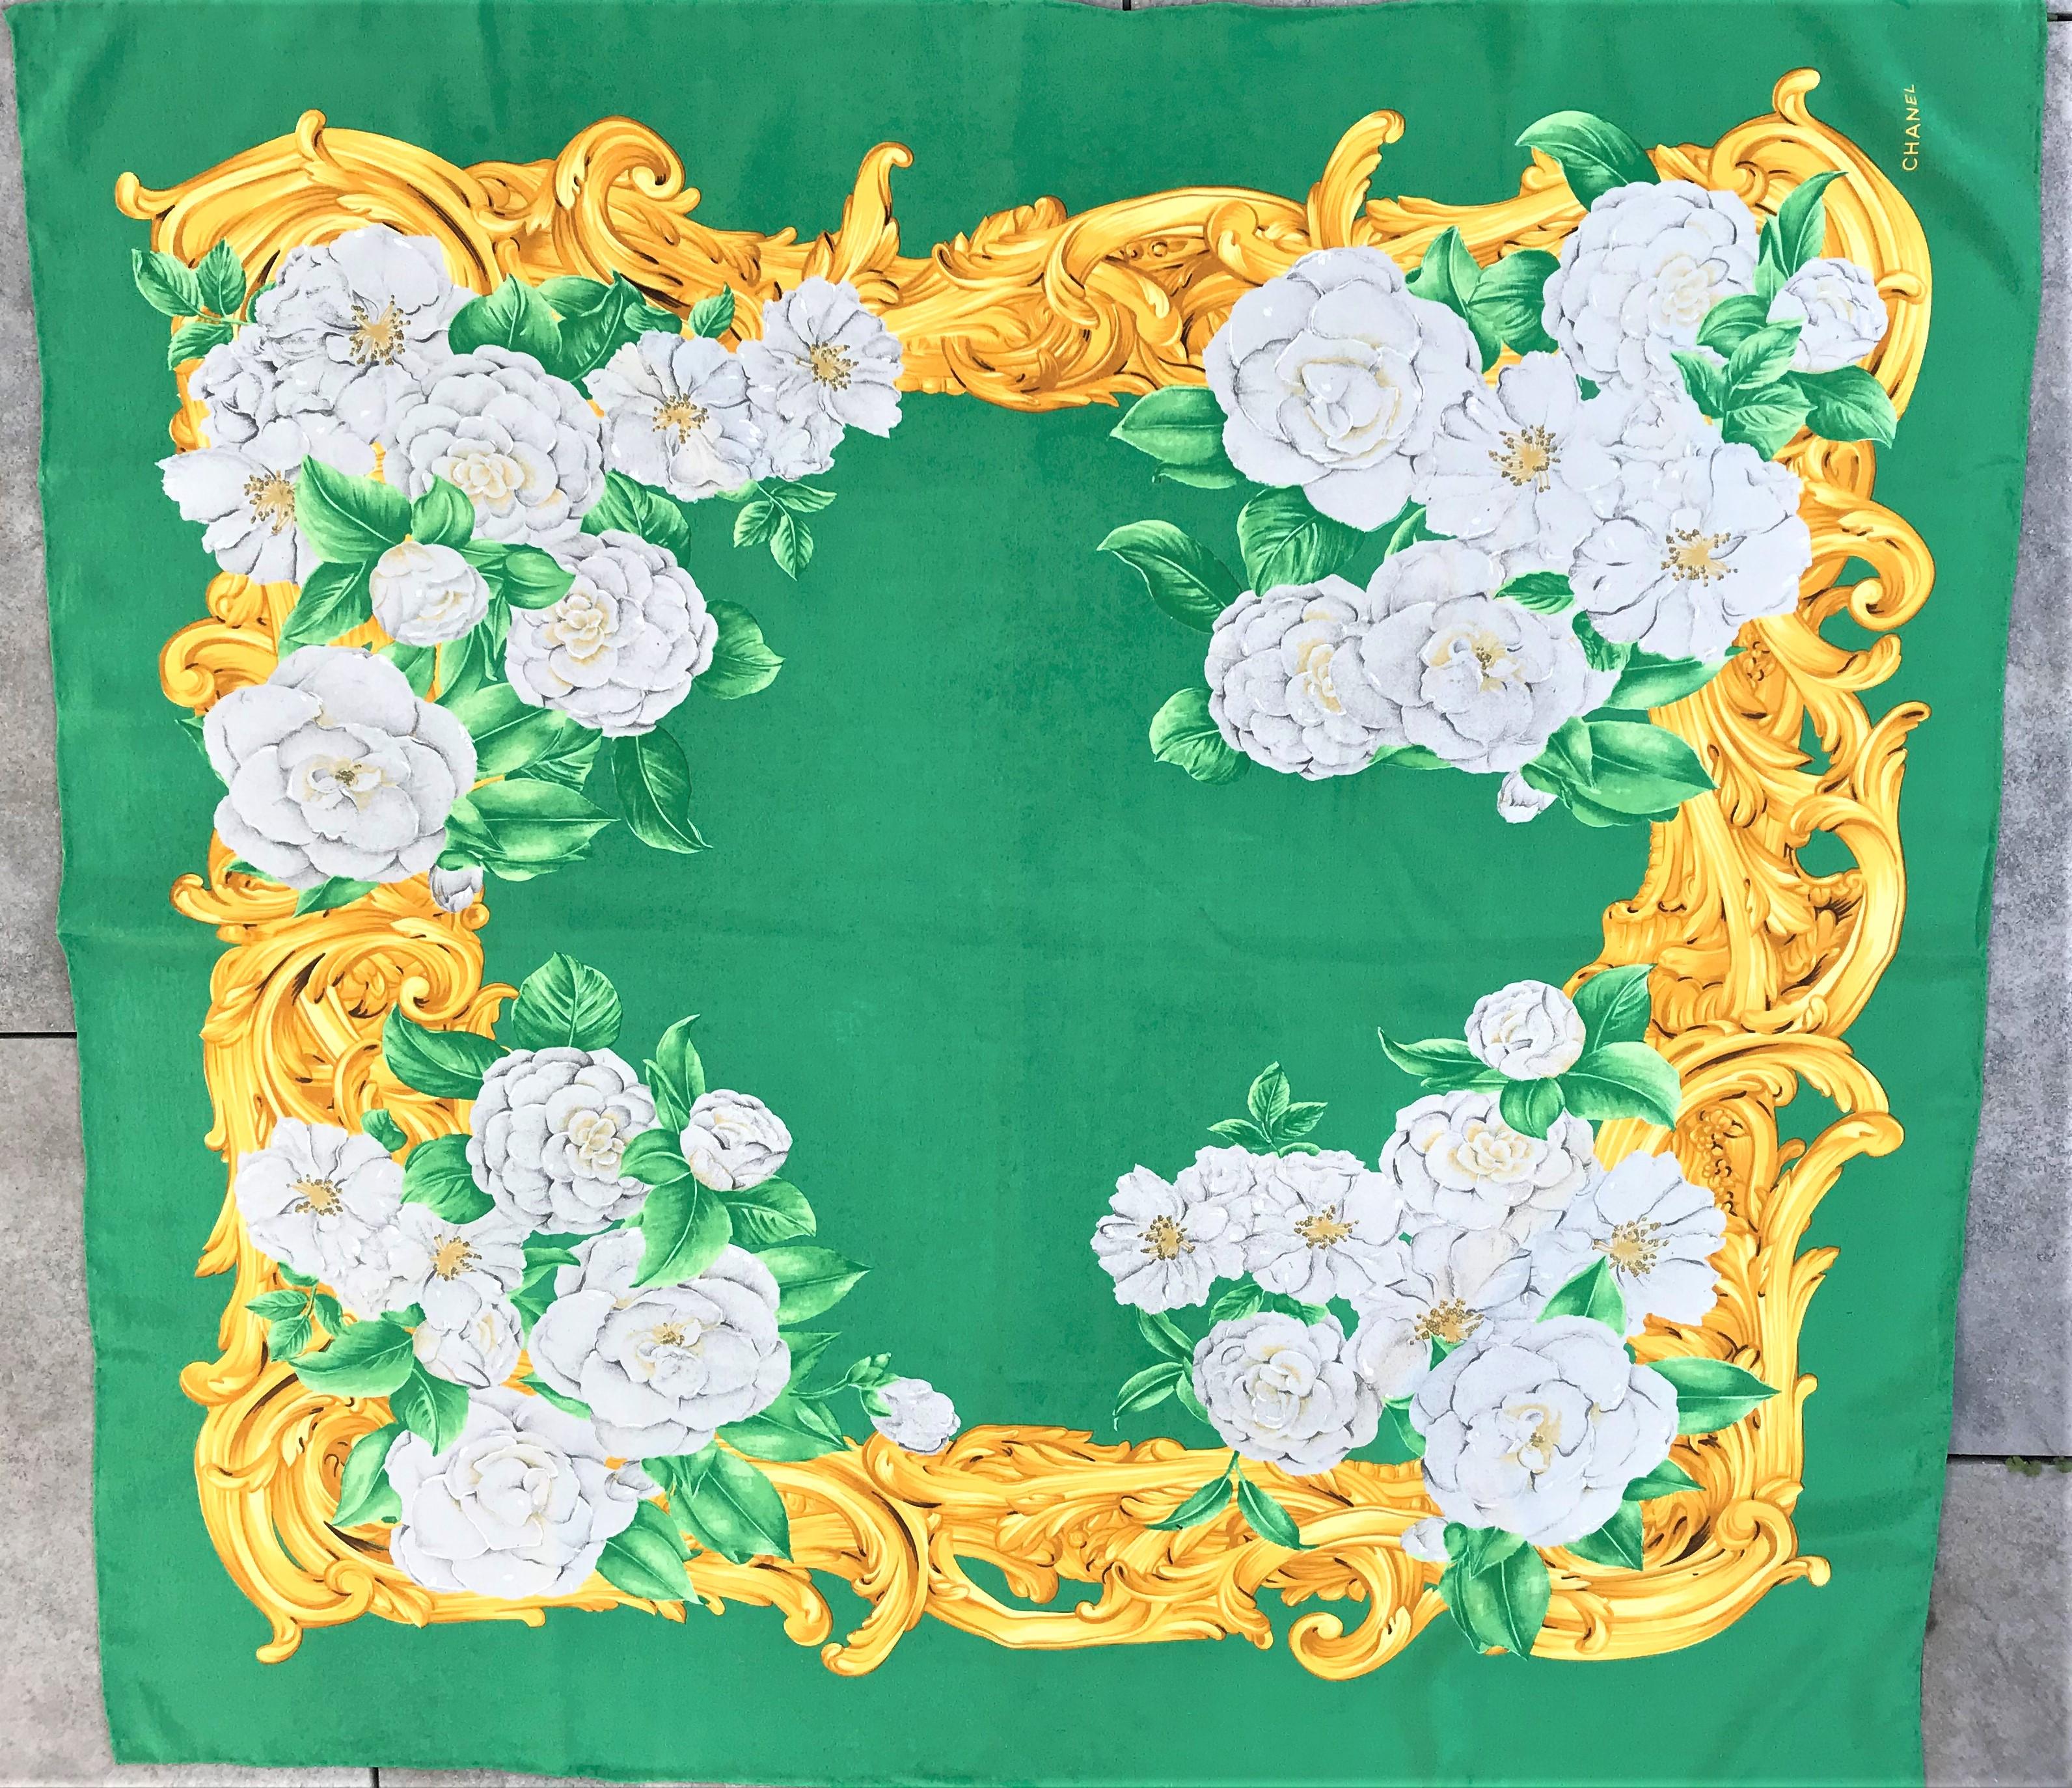 Vintage-Seidenschal von Chanel, bedruckt mit der Lieblingsblume von Coco Chanel, der Cameilia, auf grünem Grund.
Grüner Grund, verschiedene Kamelien in Hellgrau mit grünen Blättern und goldfarbenen Rocaillen umrandet. Der Schal ist handgerollt und